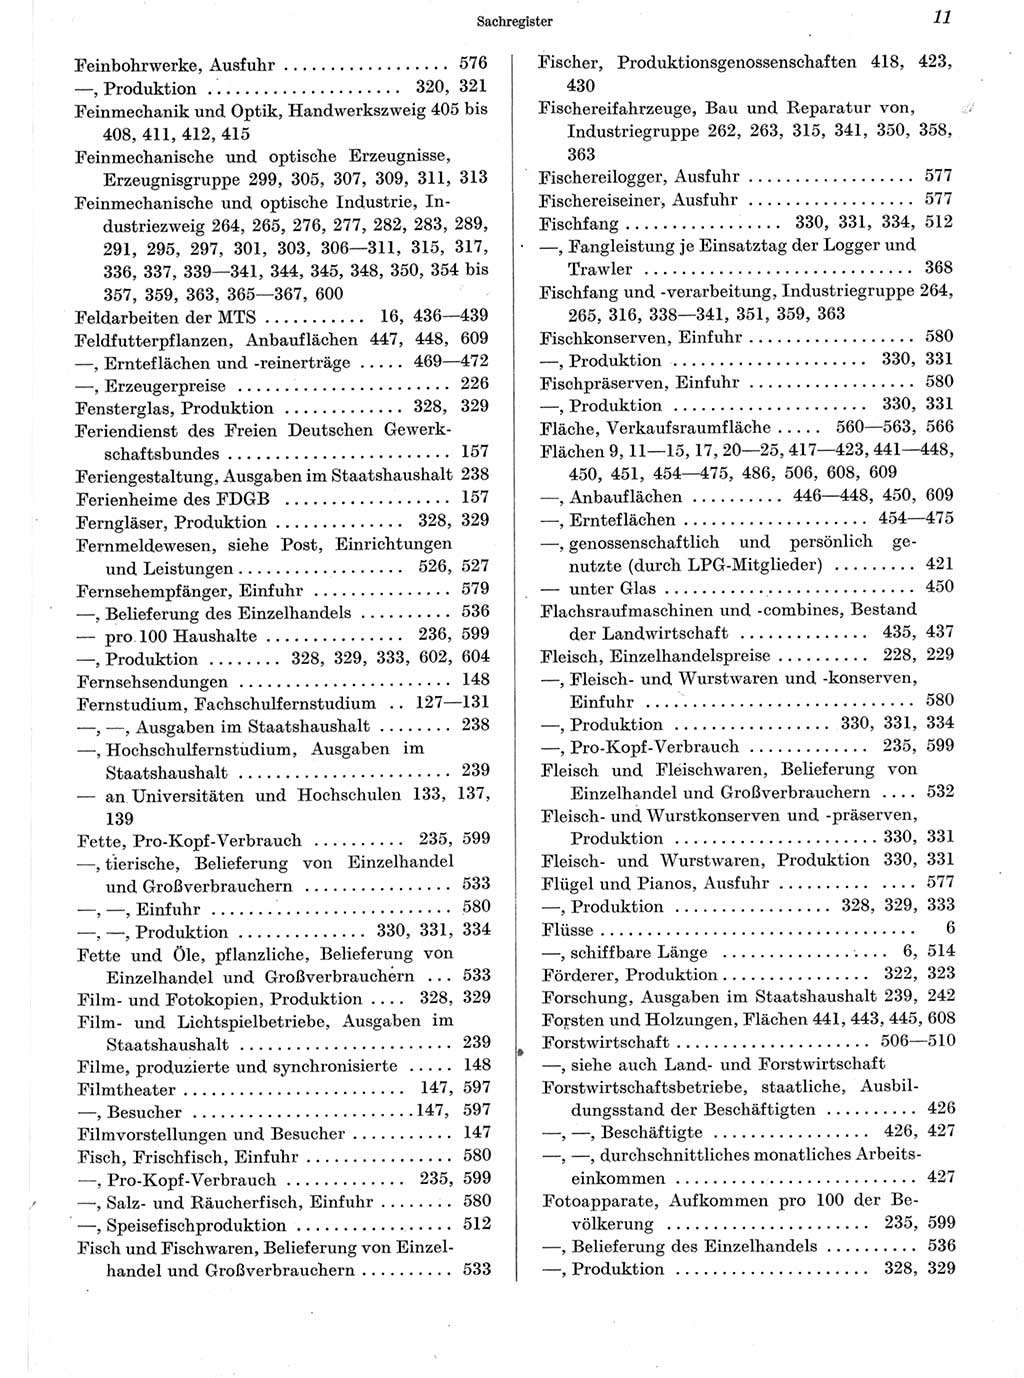 Statistisches Jahrbuch der Deutschen Demokratischen Republik (DDR) 1960-1961, Seite 11 (Stat. Jb. DDR 1960-1961, S. 11)